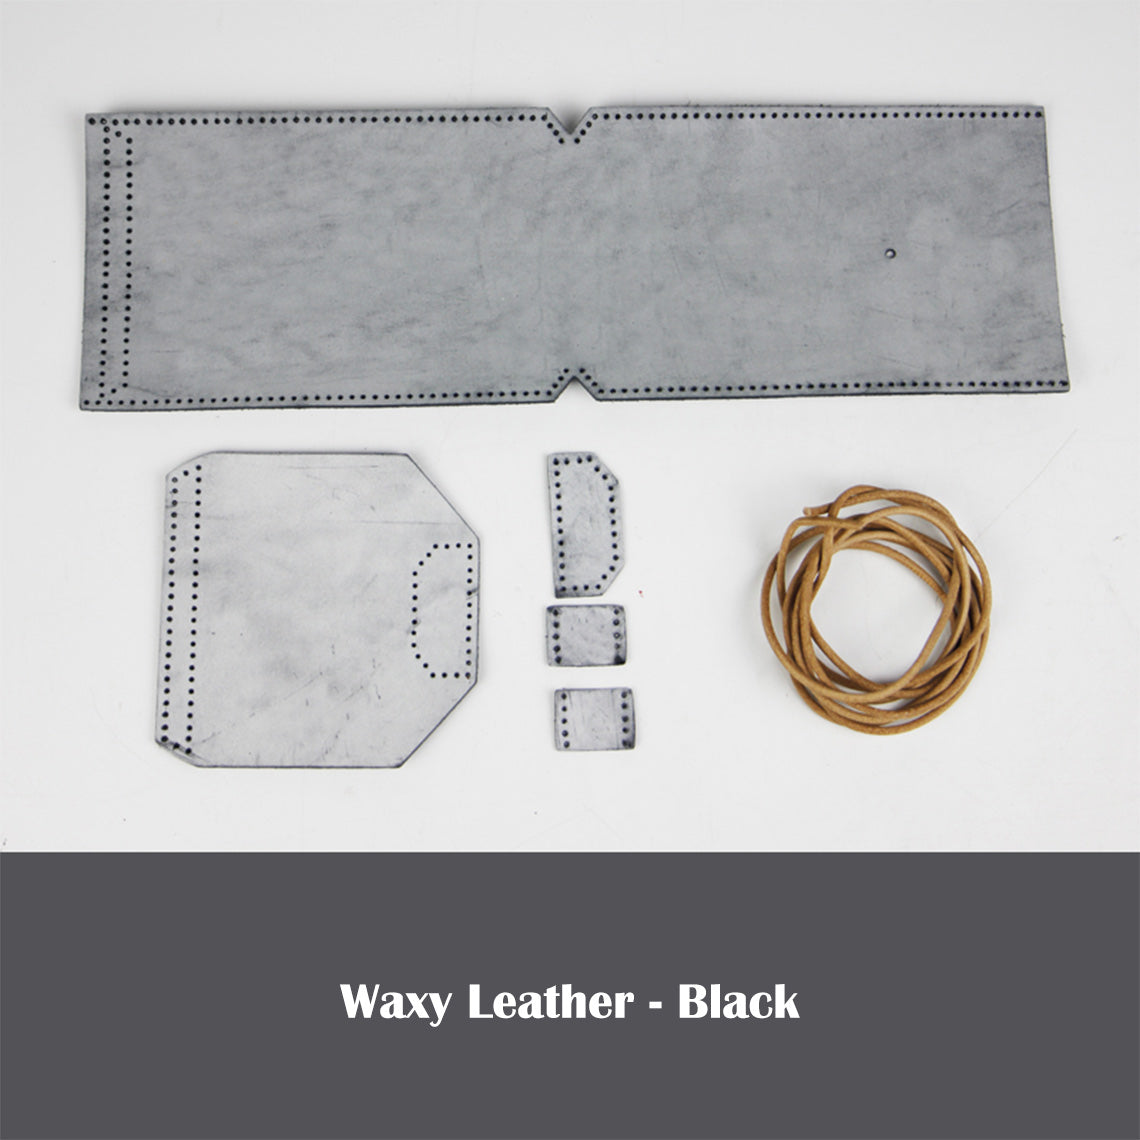 Black Leather Phone Bag Kit | DIY Bag Kits - POPSEWING®